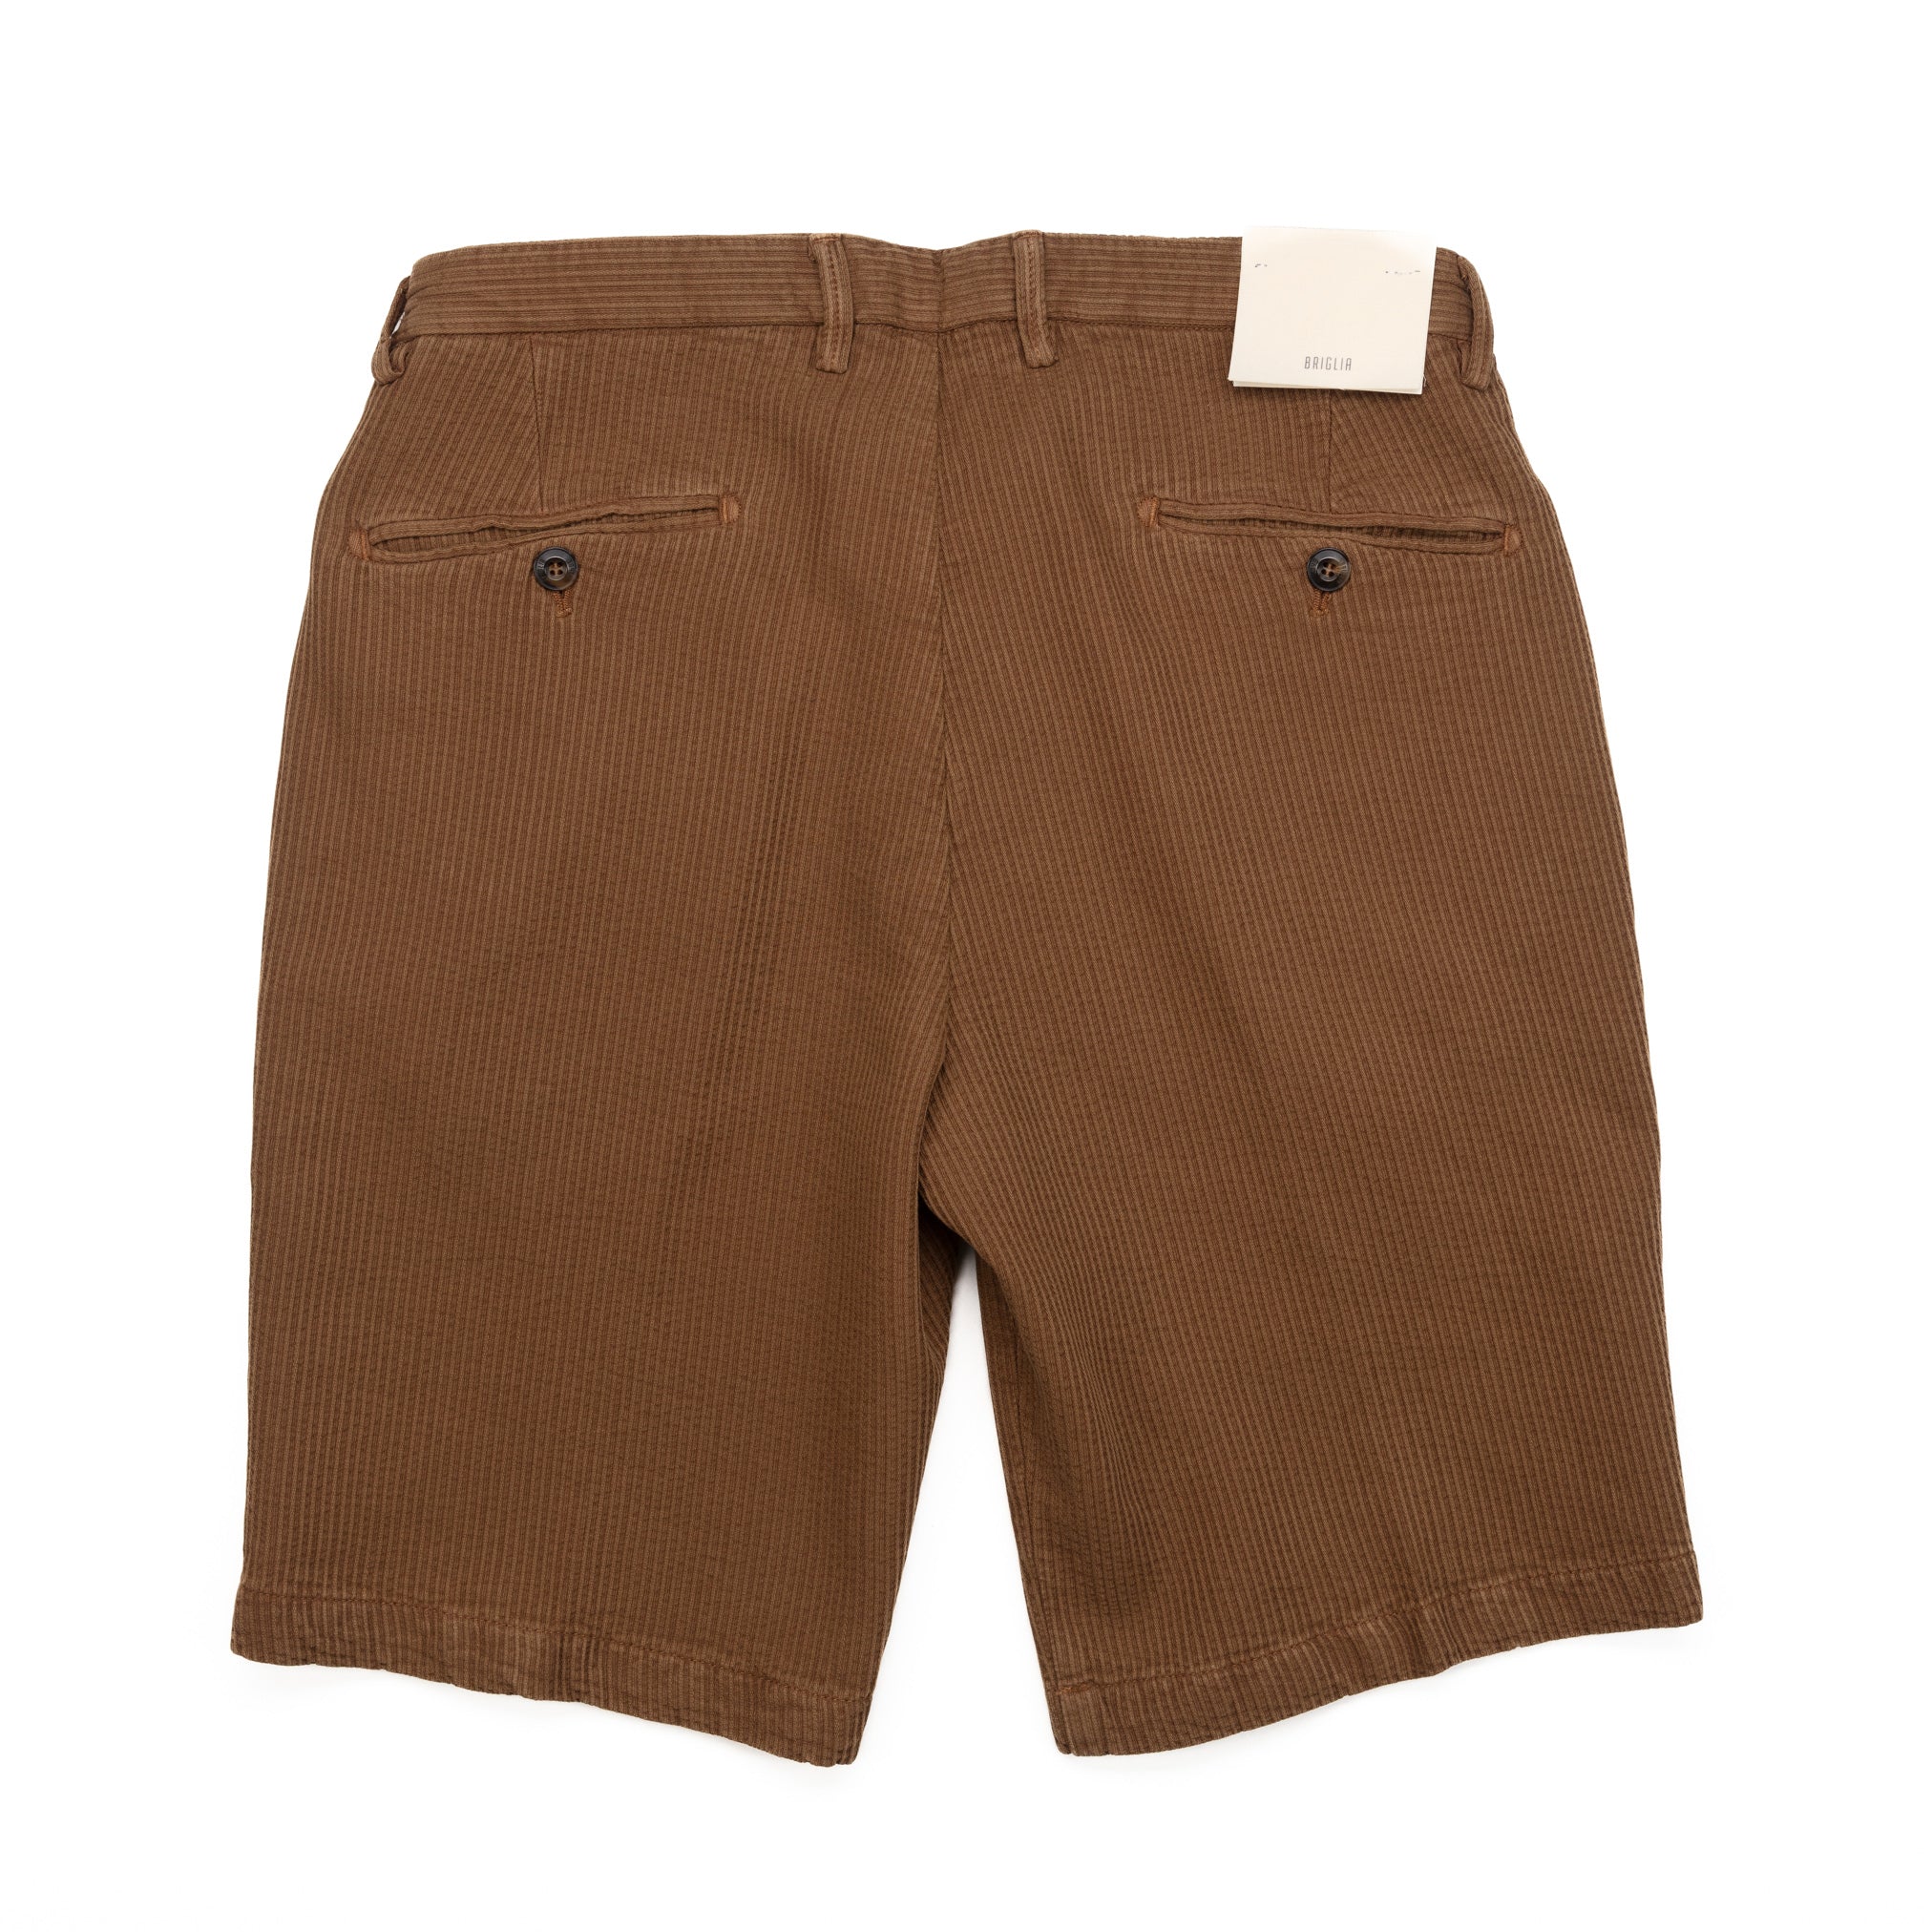 Malibu Shorts in Hazelnut